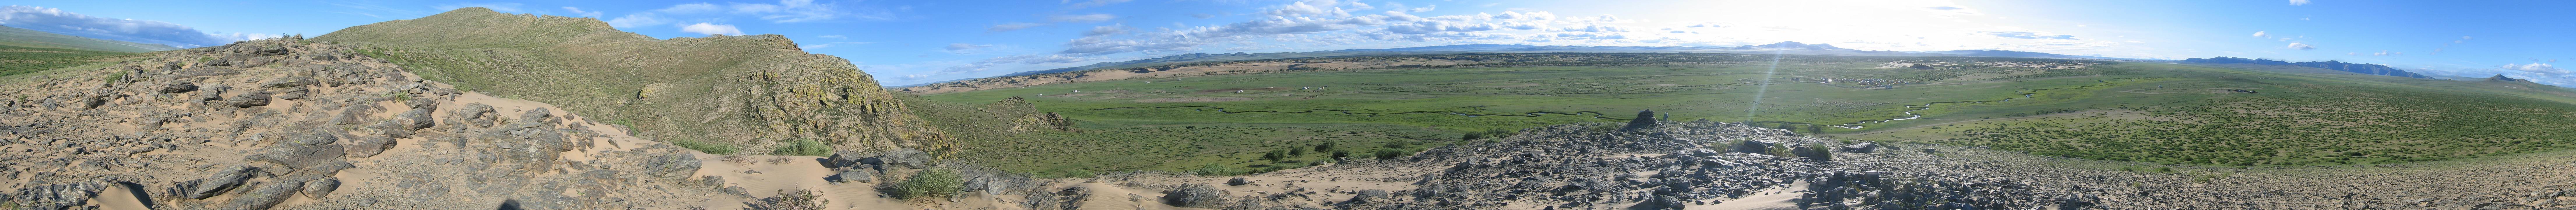 Spaziergang Camp Bayan Gobi 22 Panorama